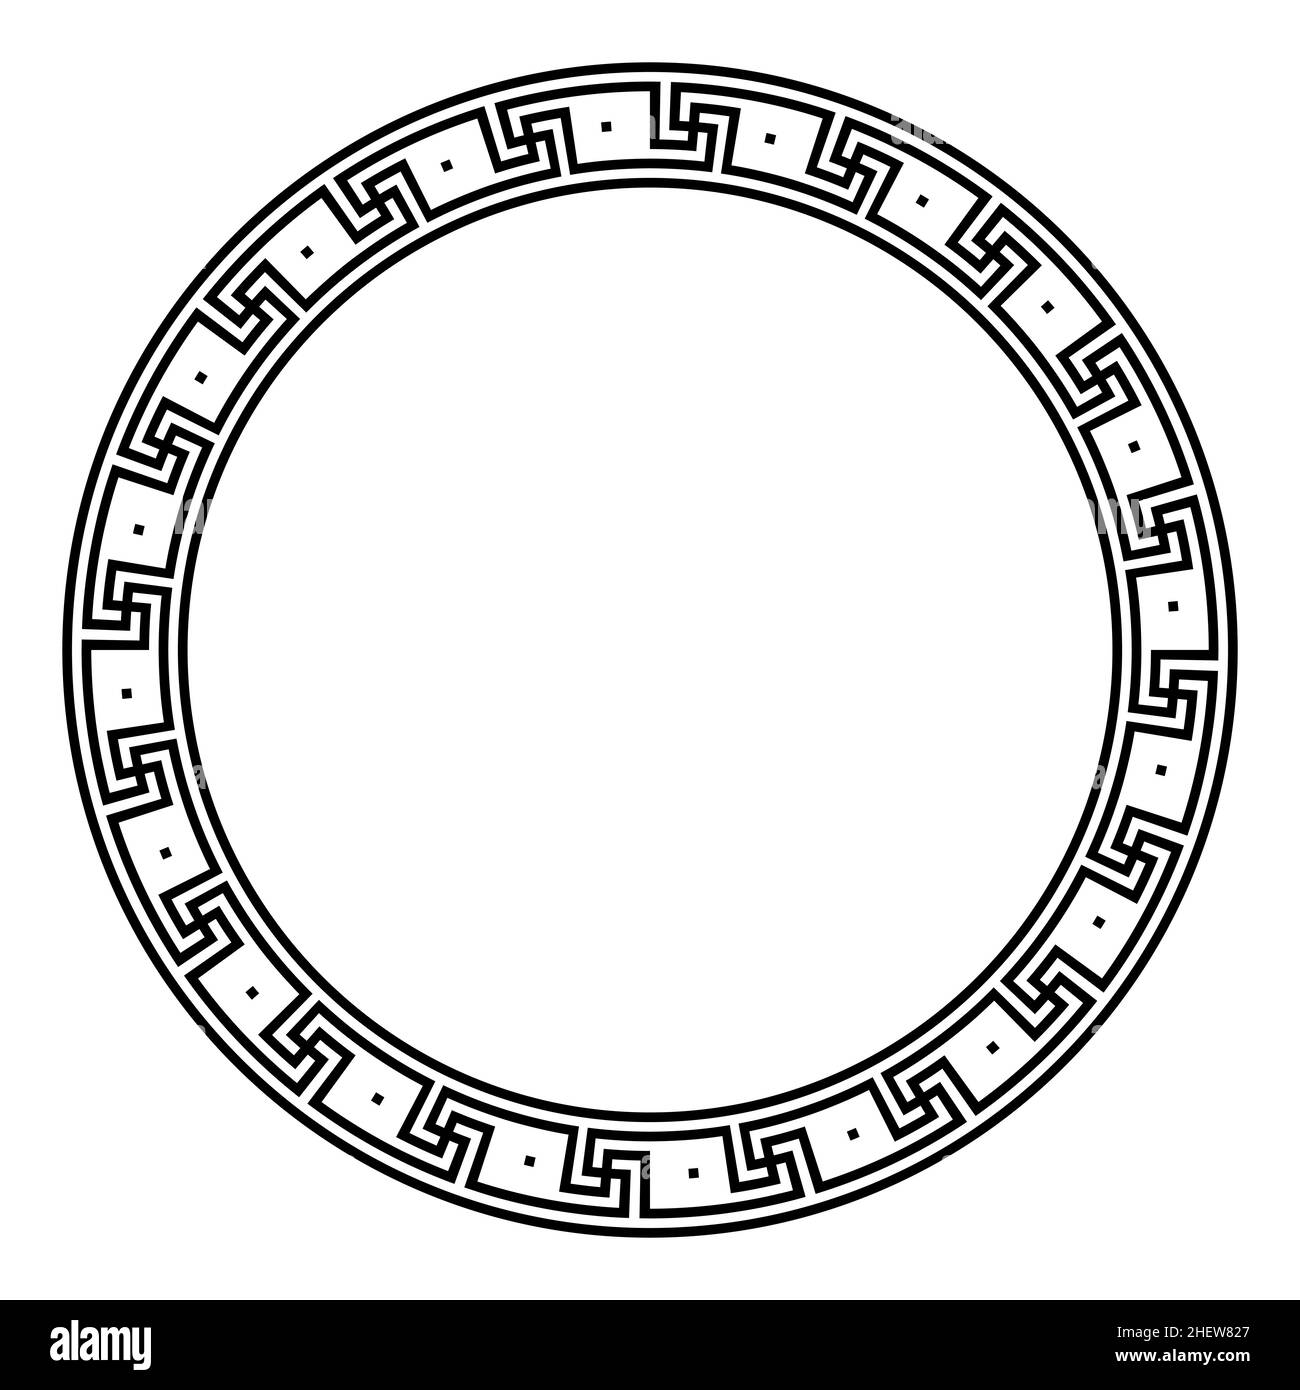 Kreuzmäandermuster, Kreisrahmen mit einzelnen Punkten. Dekorative runde Bordüre aus Linien, geformt zu einem wiederholten Motiv. Stockfoto